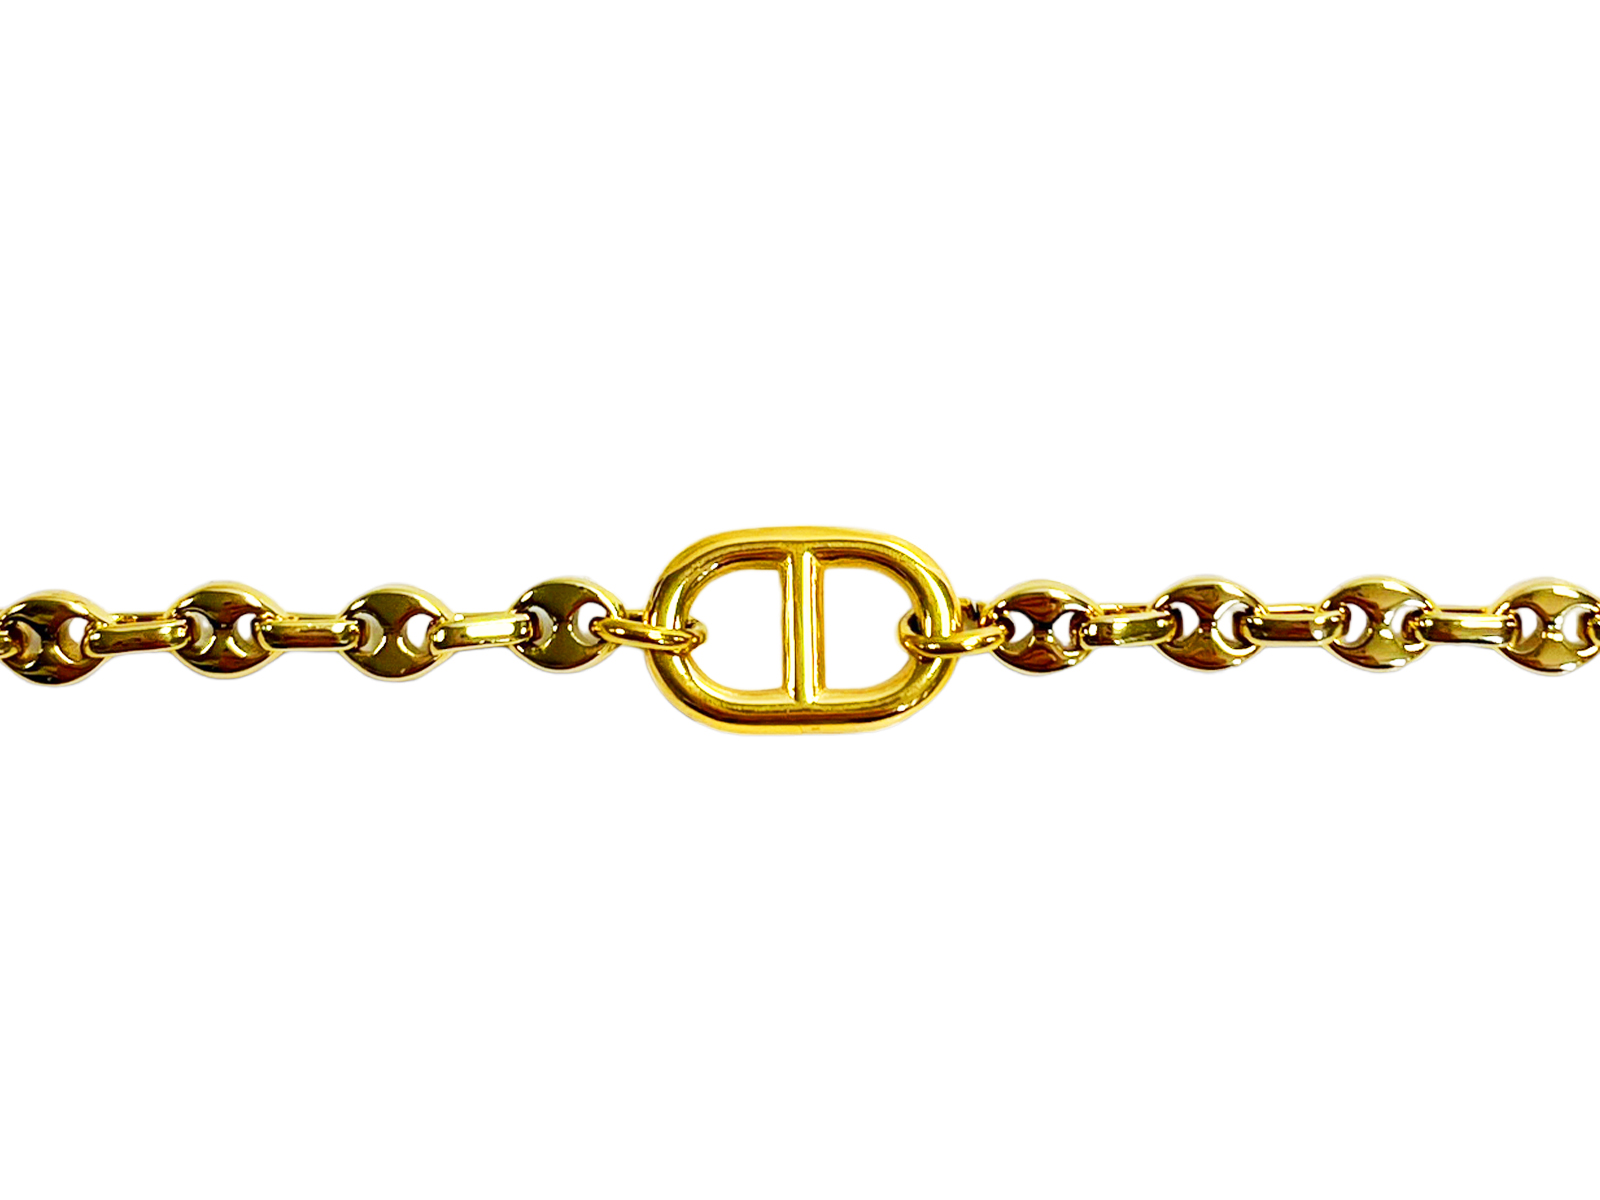 Bracelet maille marine chainage grain de café 5mm doré